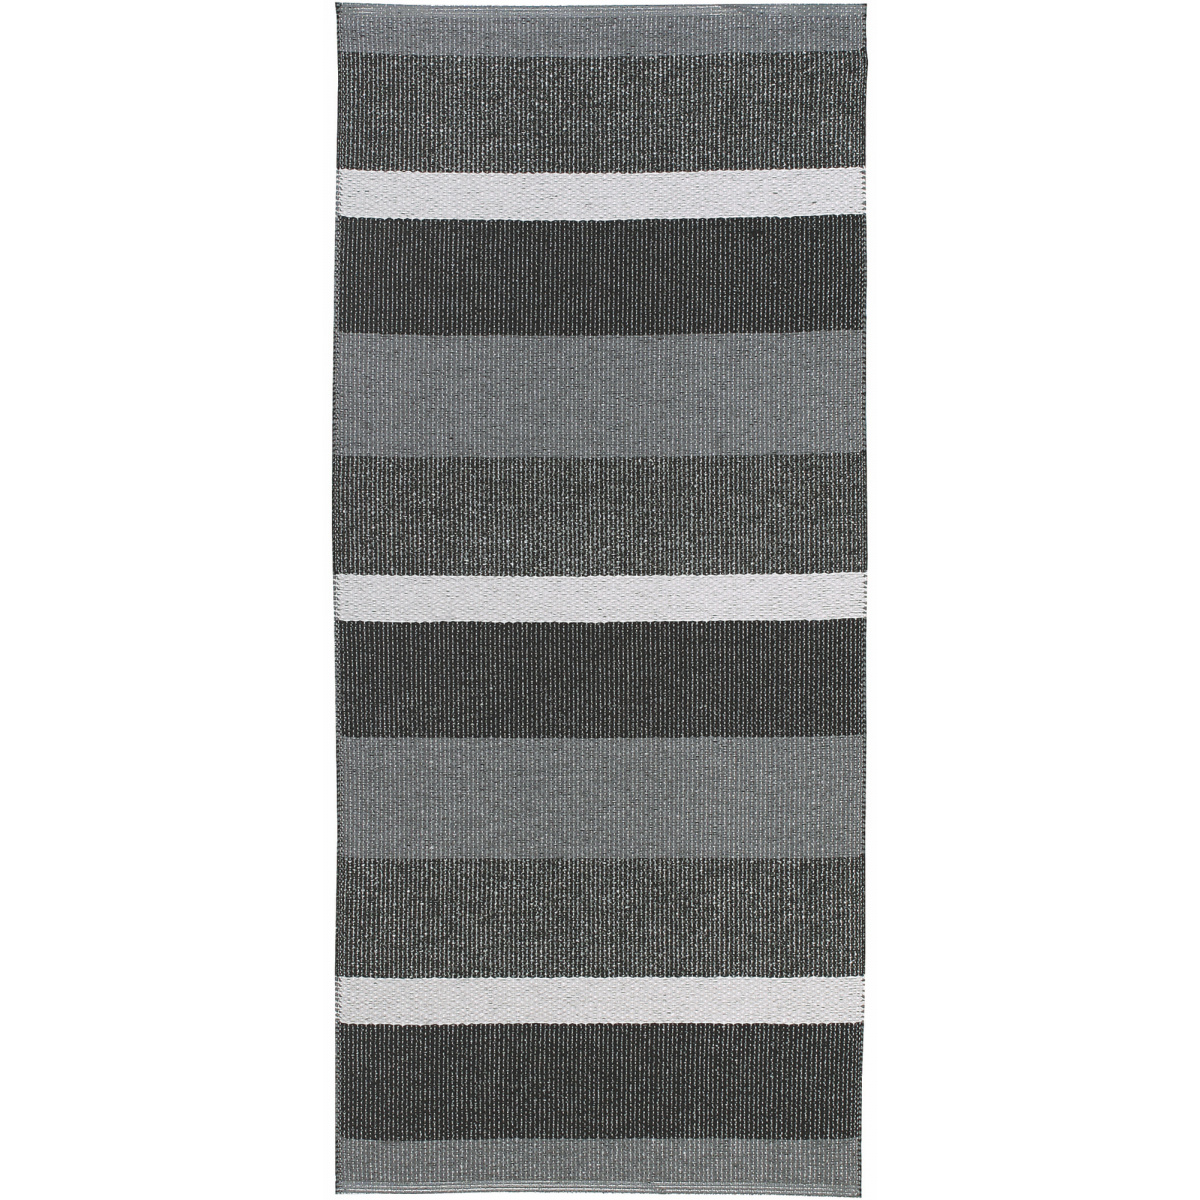 Horredsmattan Outdoor-Teppich - Block graphit, 70x150